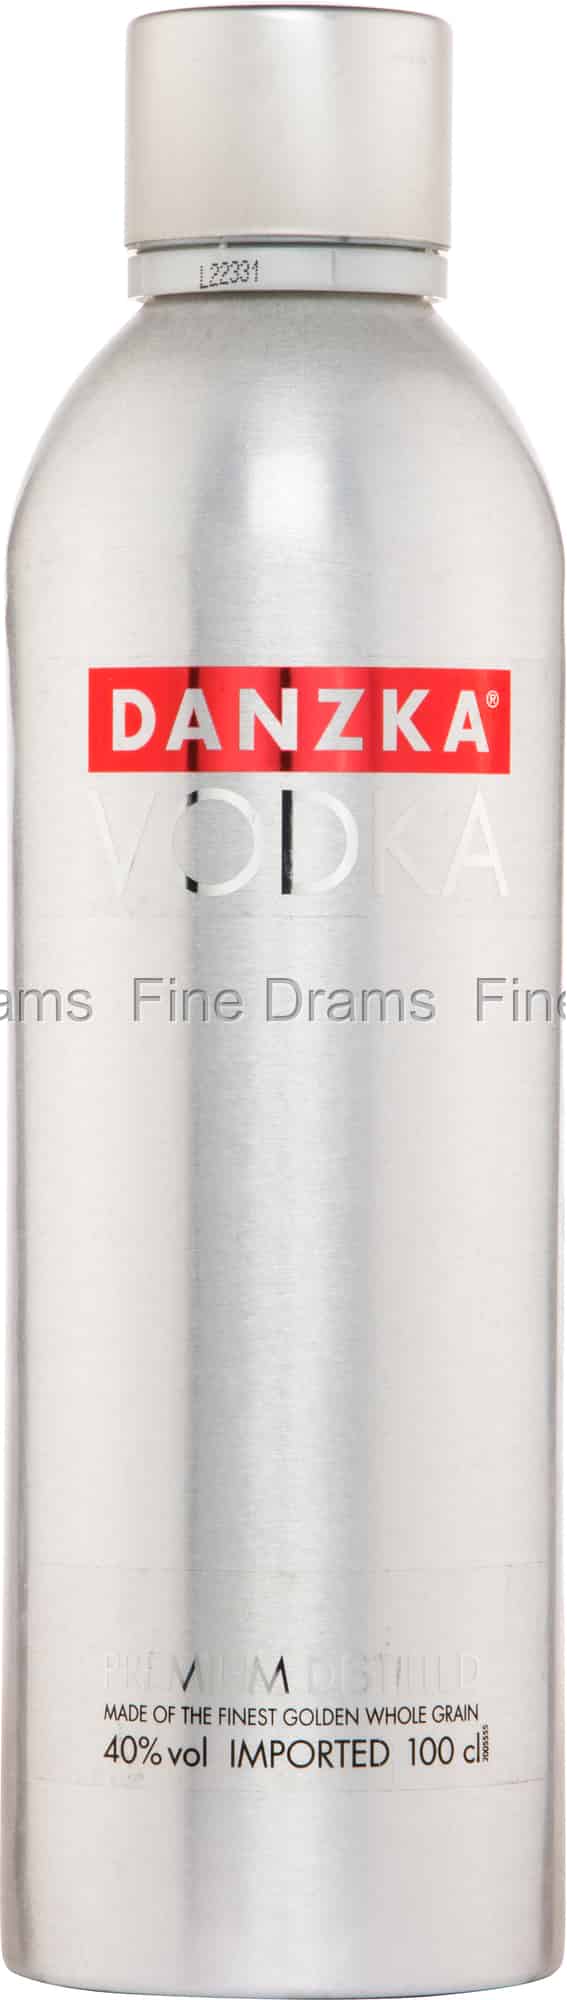 Danzka Vodka (1 Liter)